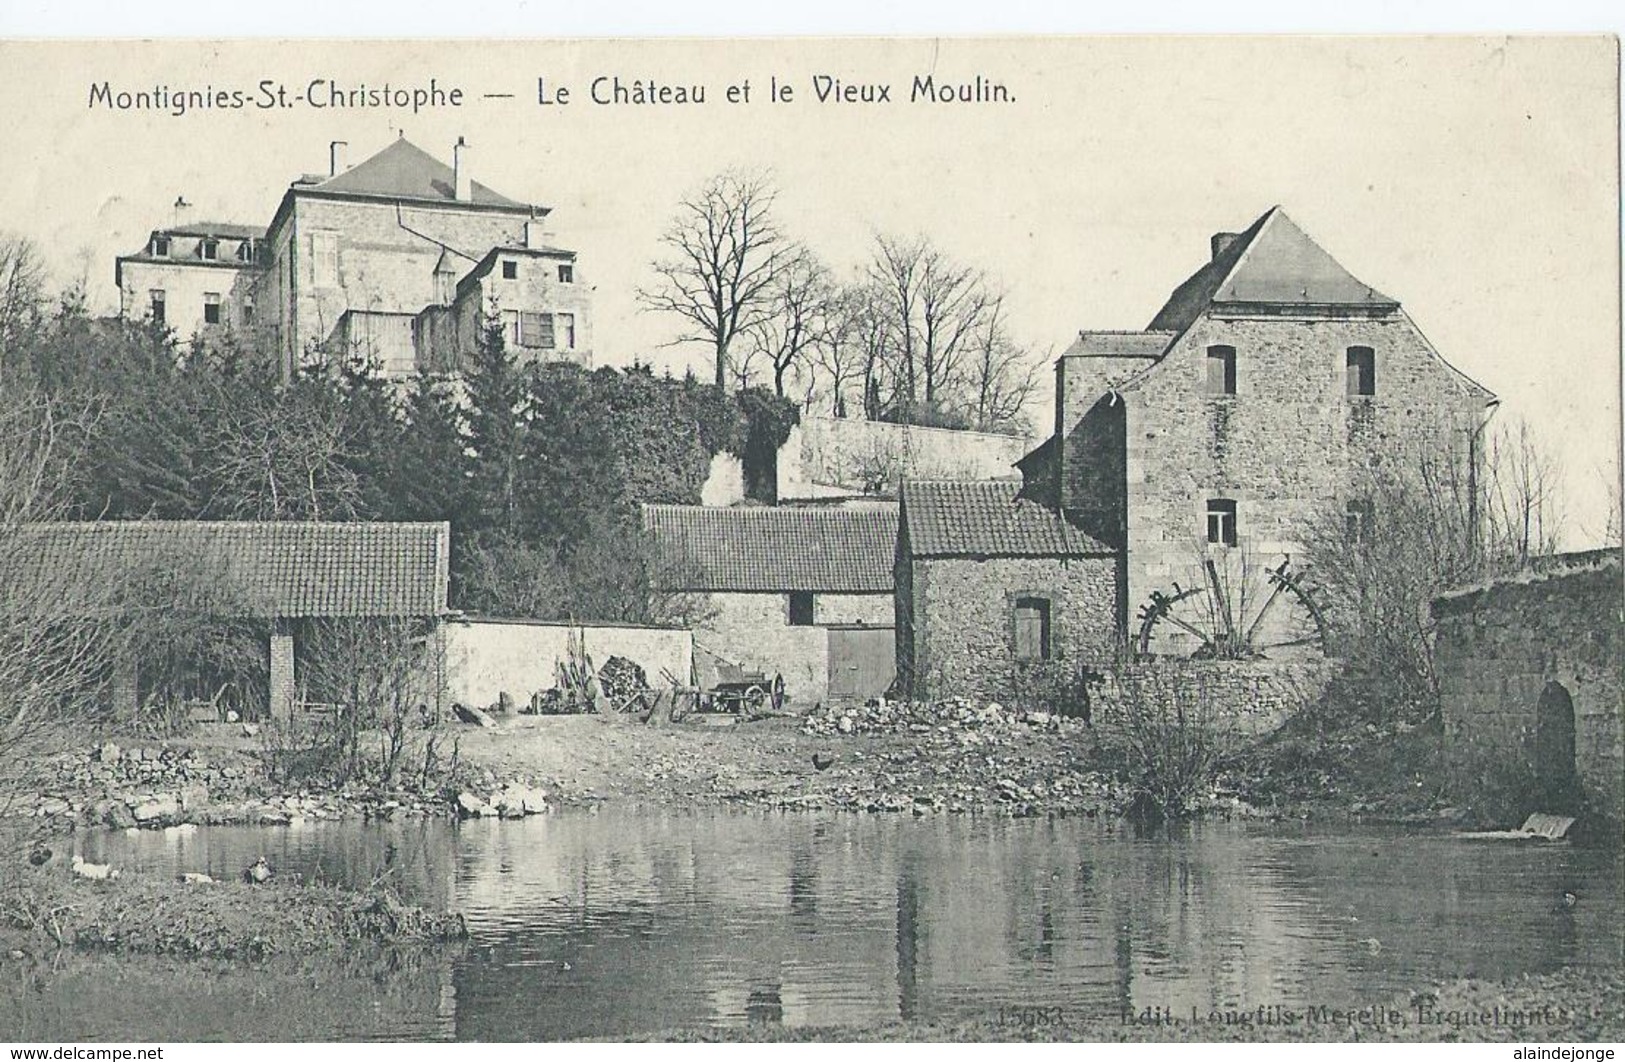 Montignies-St. Christophe - Le Château Et Le Vieux Moulin - 15683 Edit. Longfils-Merelle , Erquelinnes - 1909 - Erquelinnes